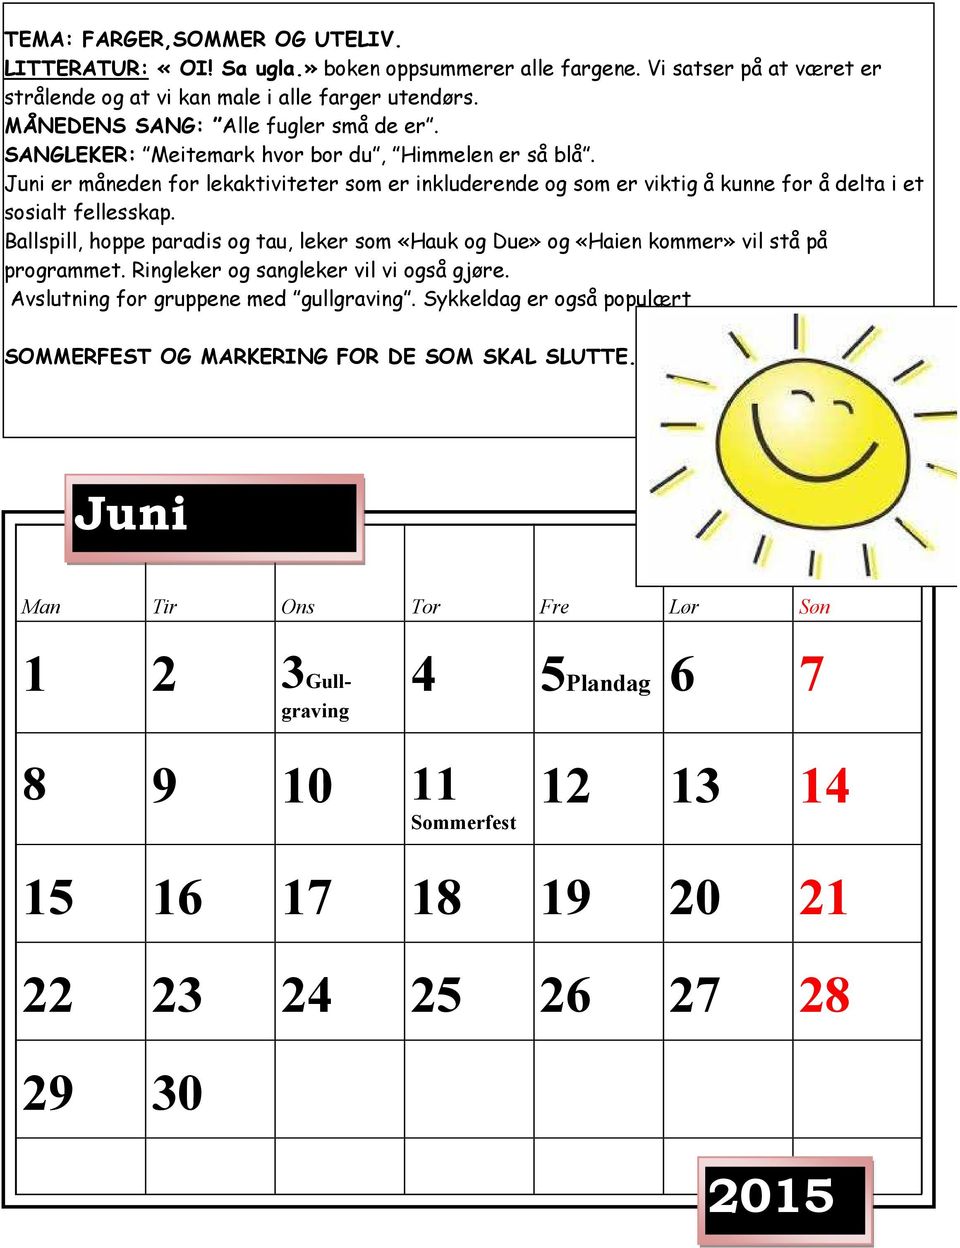 Juni er måneden for lekaktiviteter som er inkluderende og som er viktig å kunne for å delta i et sosialt fellesskap.